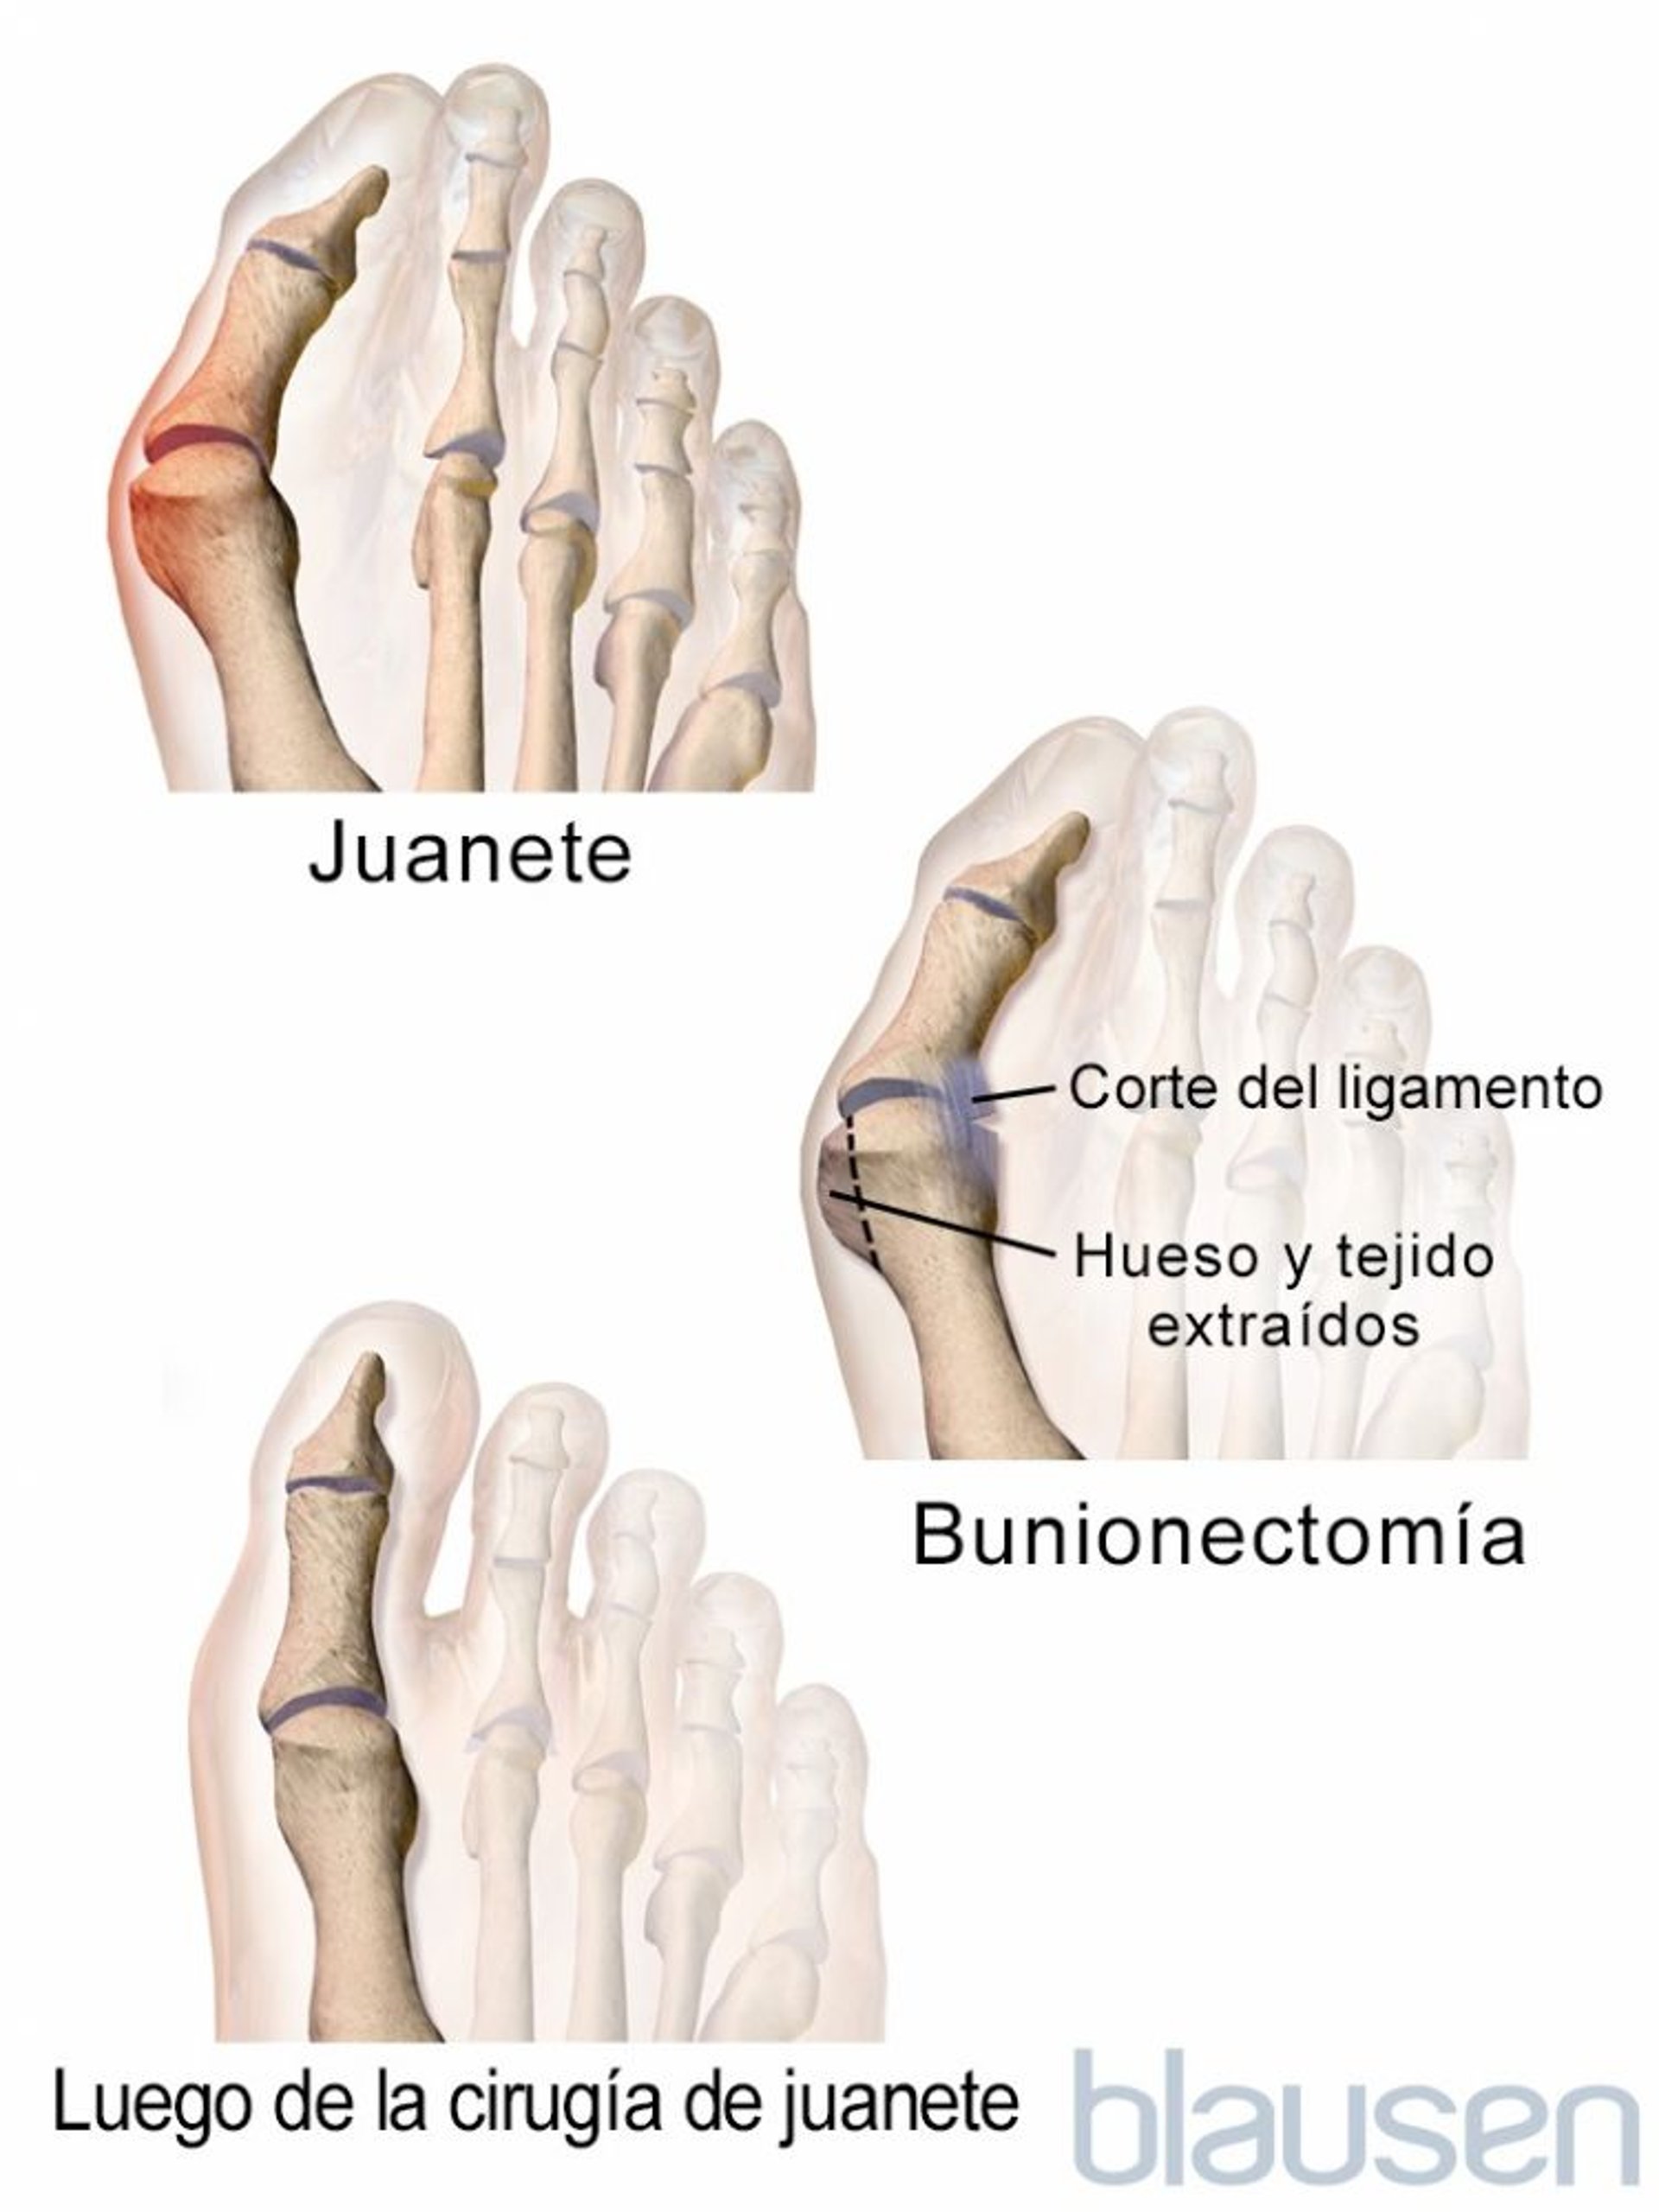 Exostectomía del primer dedo del pie o corrección de juanetes